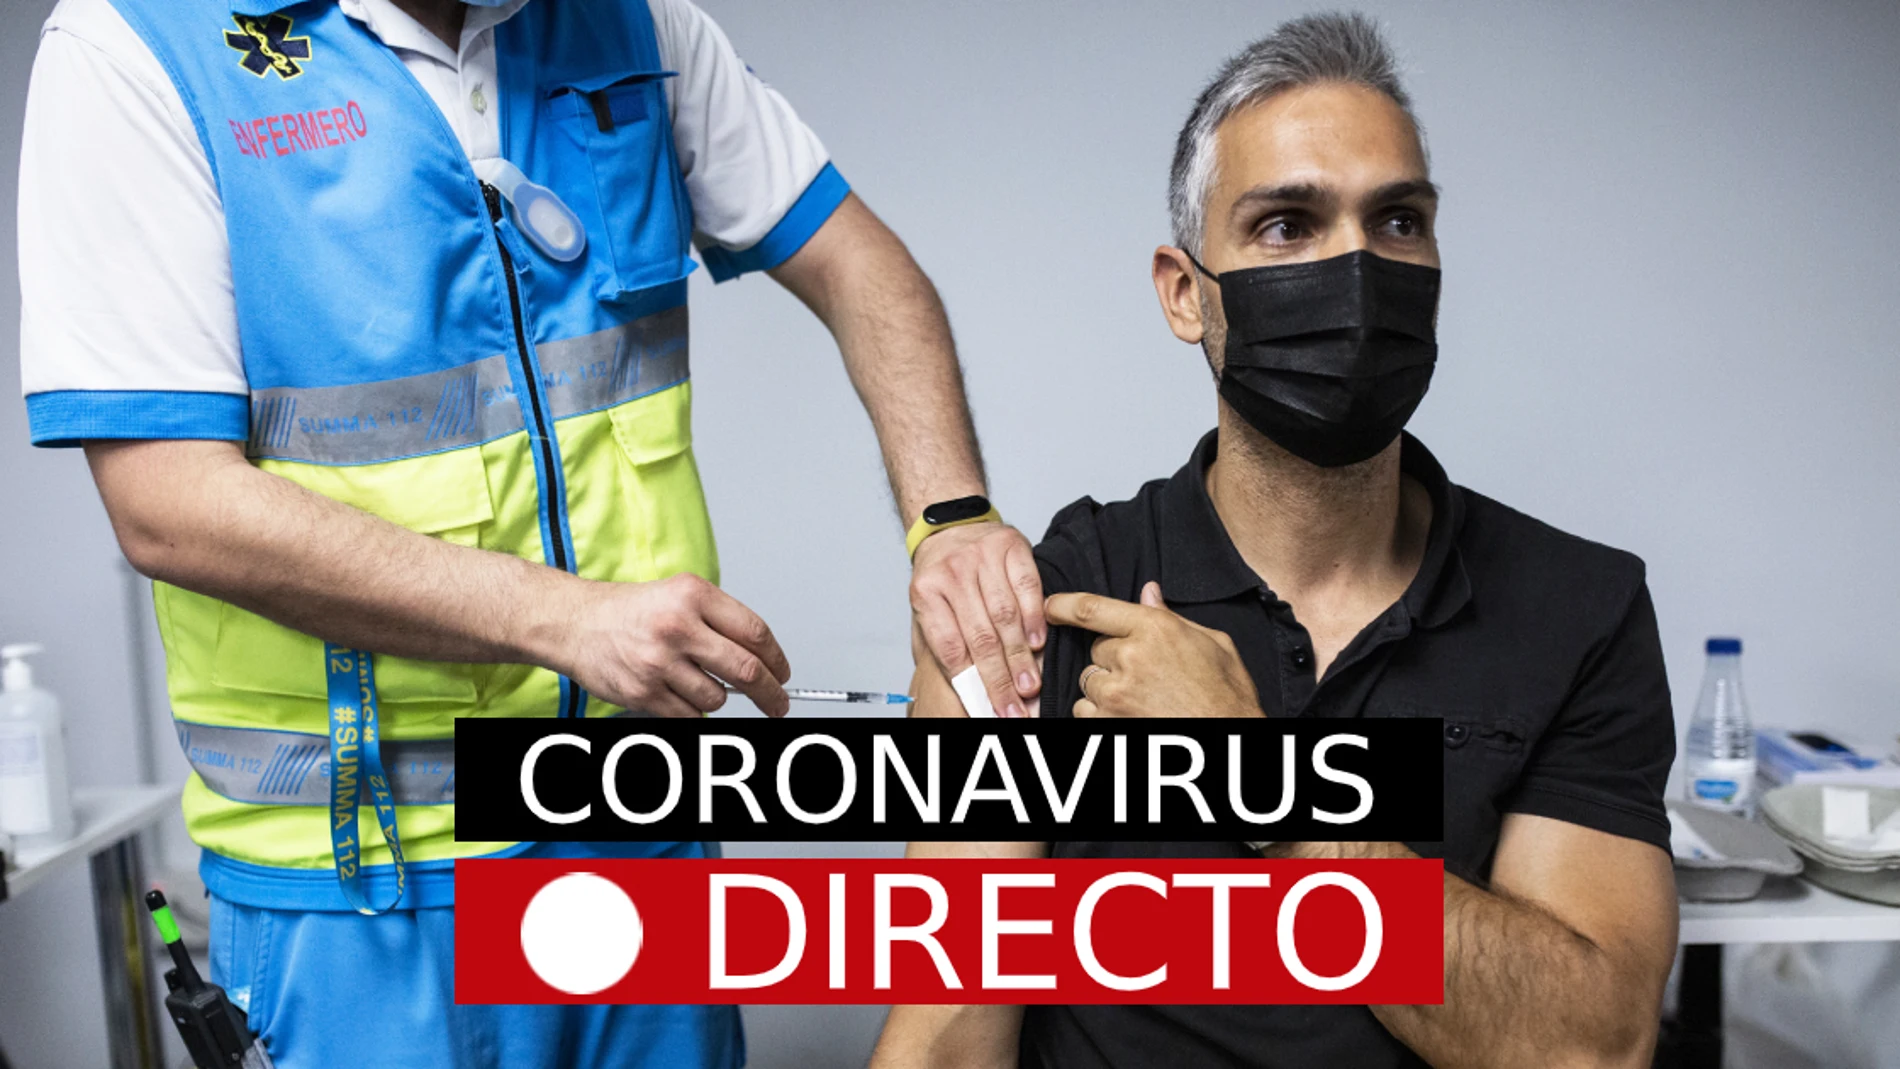 Nuevas restricciones por COVID: Última hora del coronavirus en España y vacuna hoy